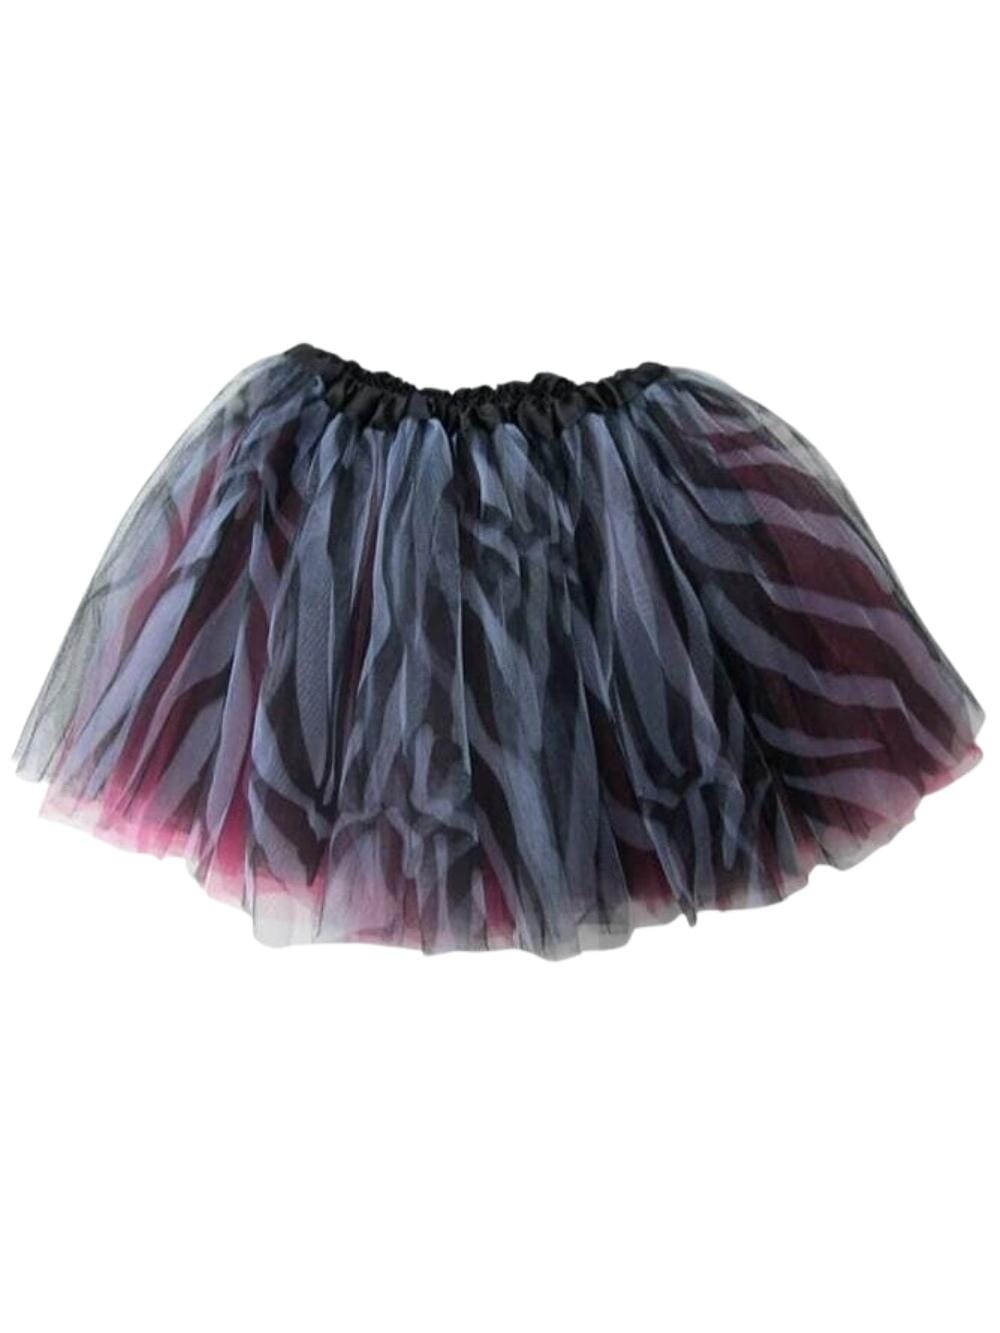 Zebra Hot Pink Tutu Skirt - Kids Size 3-Layer Tulle Basic Ballet Dance Costume Tutus for Girls - Sydney So Sweet